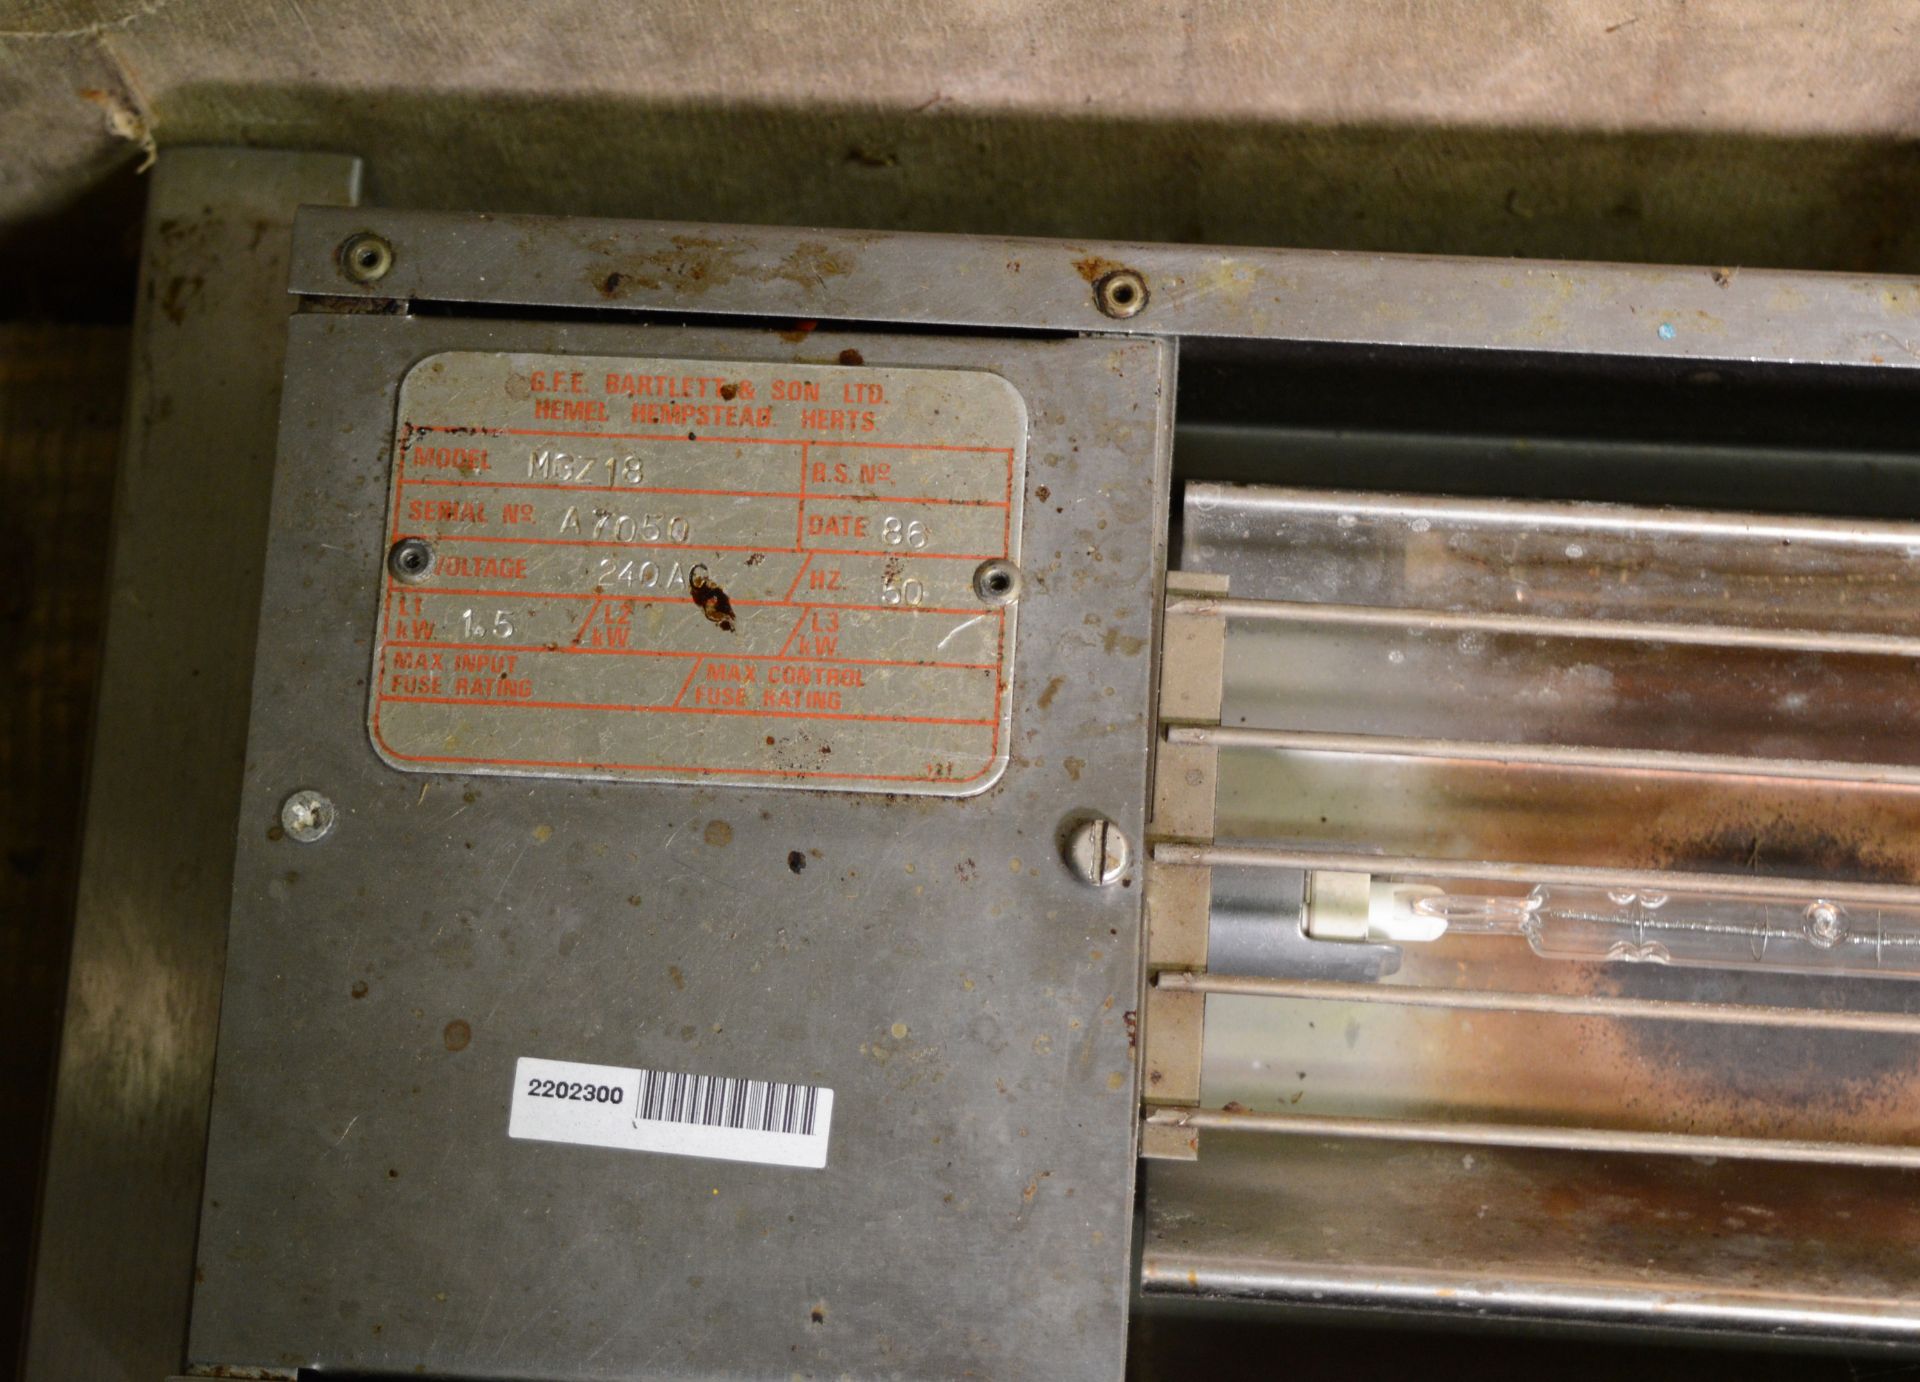 GFE Bartlett & Son MGZ12 Overhead Hot Plate Heater. GFE Bartlett & Son MGZ18 Overhead Hot - Image 2 of 3